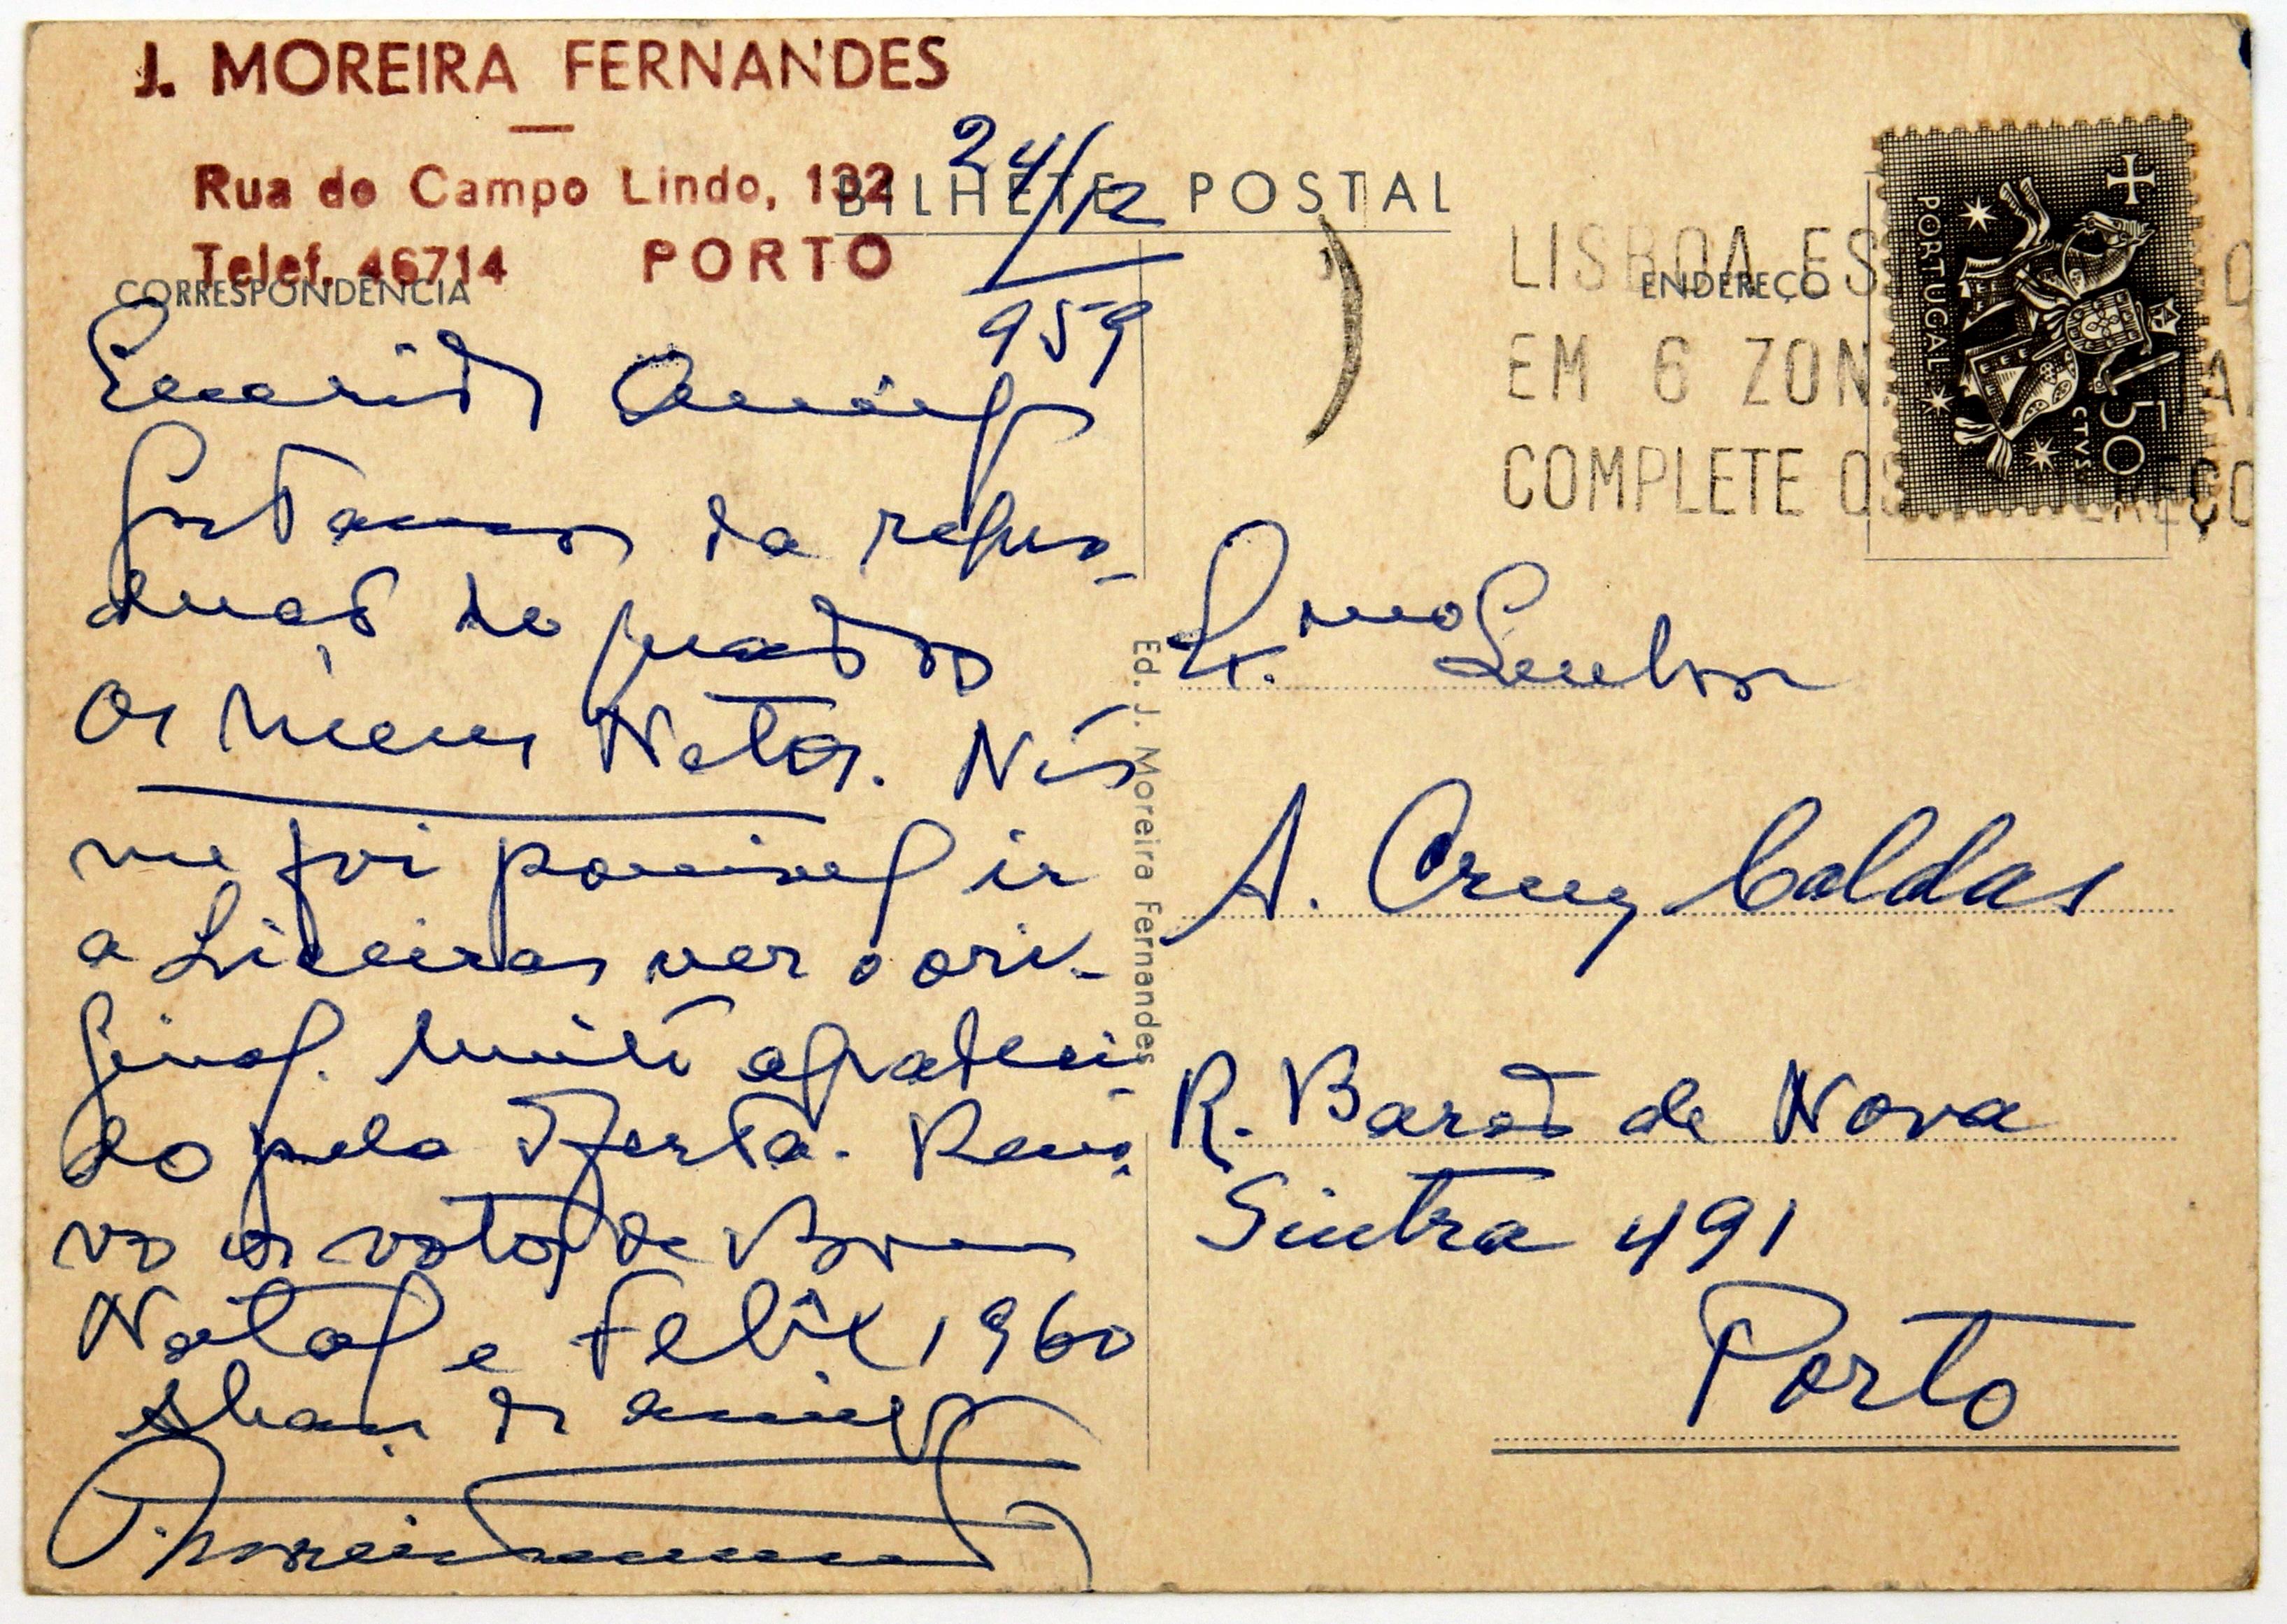 Cruz Caldas e José Moreira Fernandes : [Bilhetes postais de Moreira Fernandes enviados a Cruz Caldas